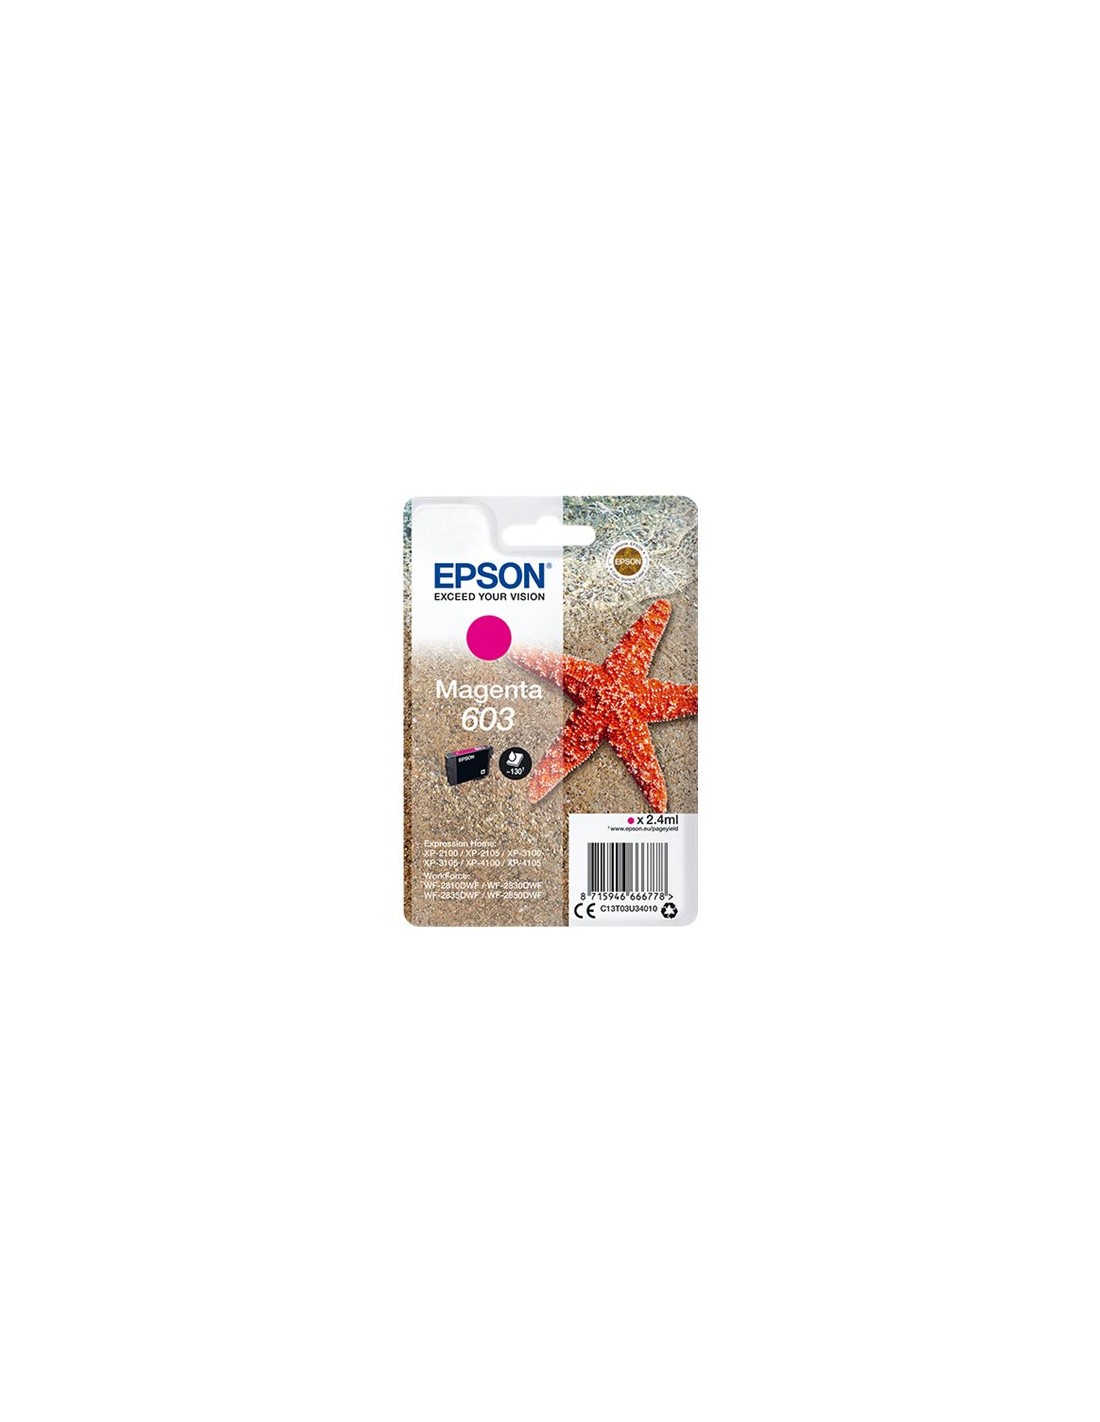 Epson 603 - Étoile de mer - Magenta - Cartouche d'encre Epson